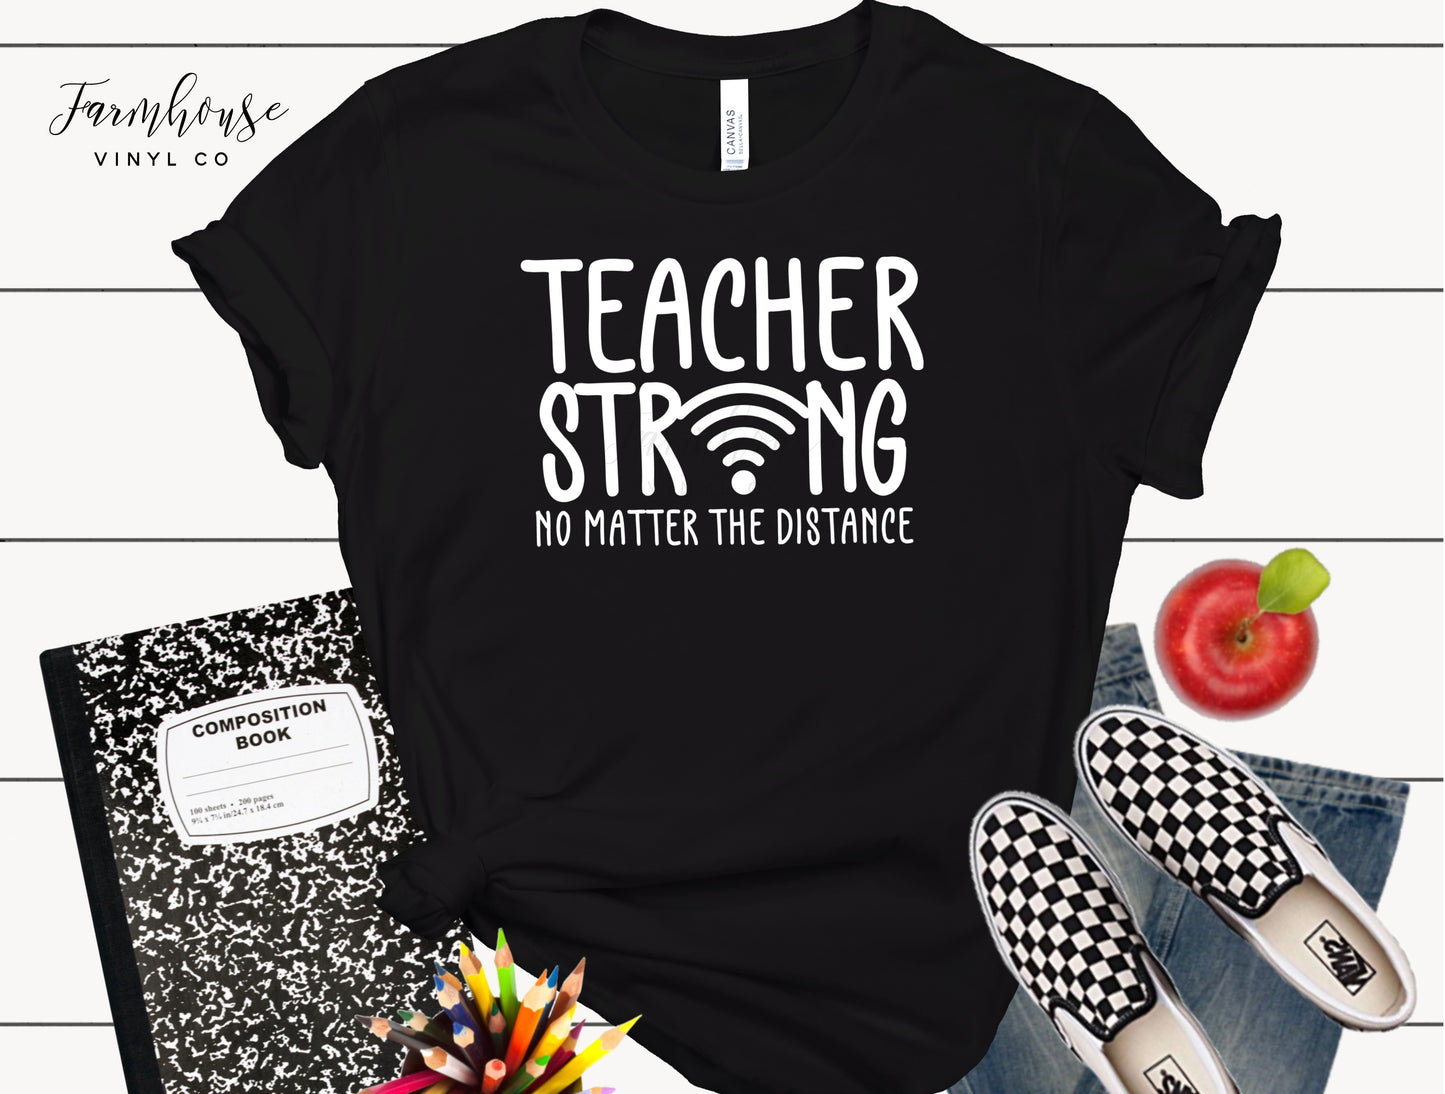 Teacher Strong No Matter the Distance Shirt - Farmhouse Vinyl Co